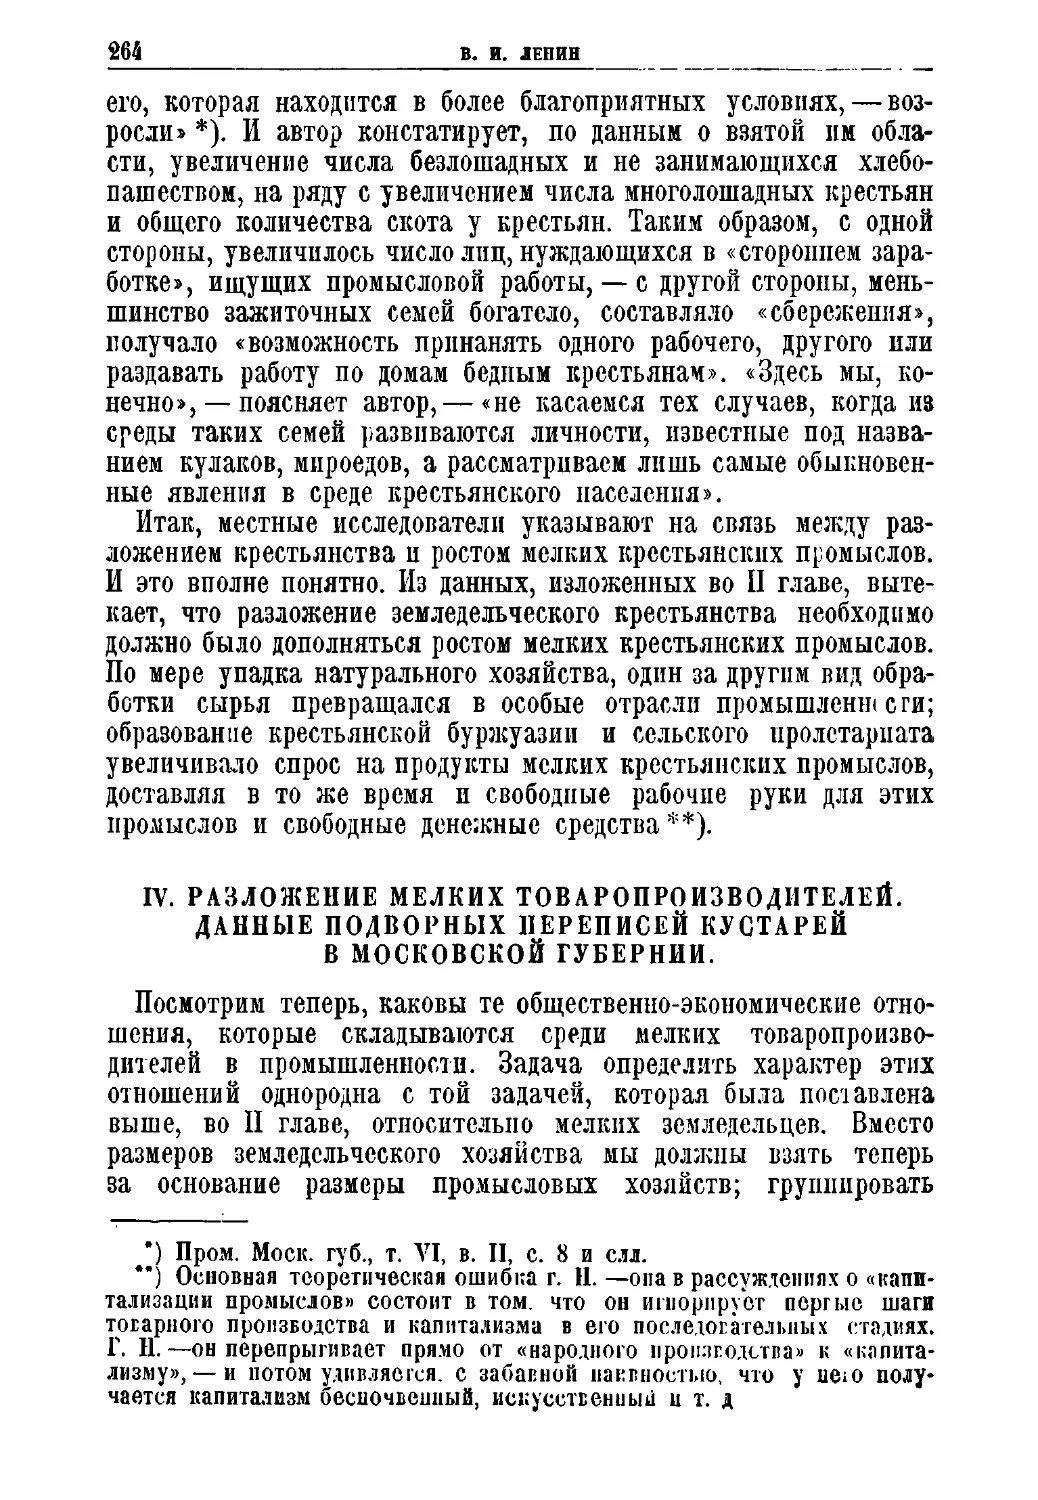 IV. Разложение мелких товаропроизводителей. Данные подворных переписей кустарей в Московской губернии.